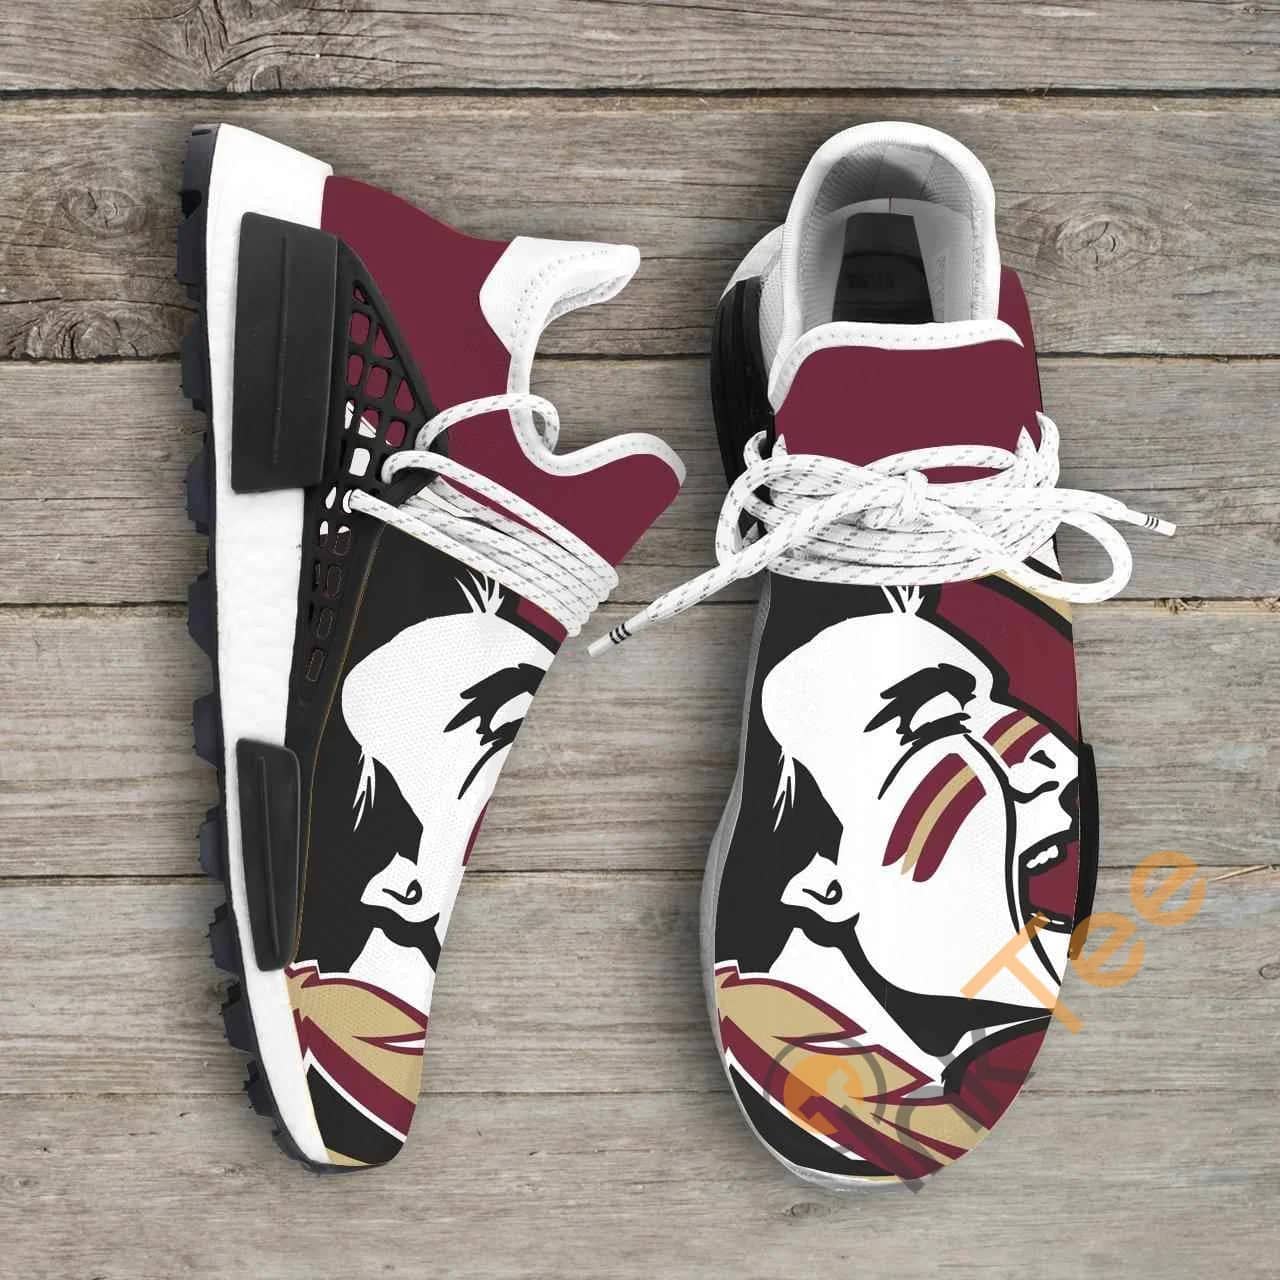 Florida State Seminoles Ncaa NMD Human Shoes